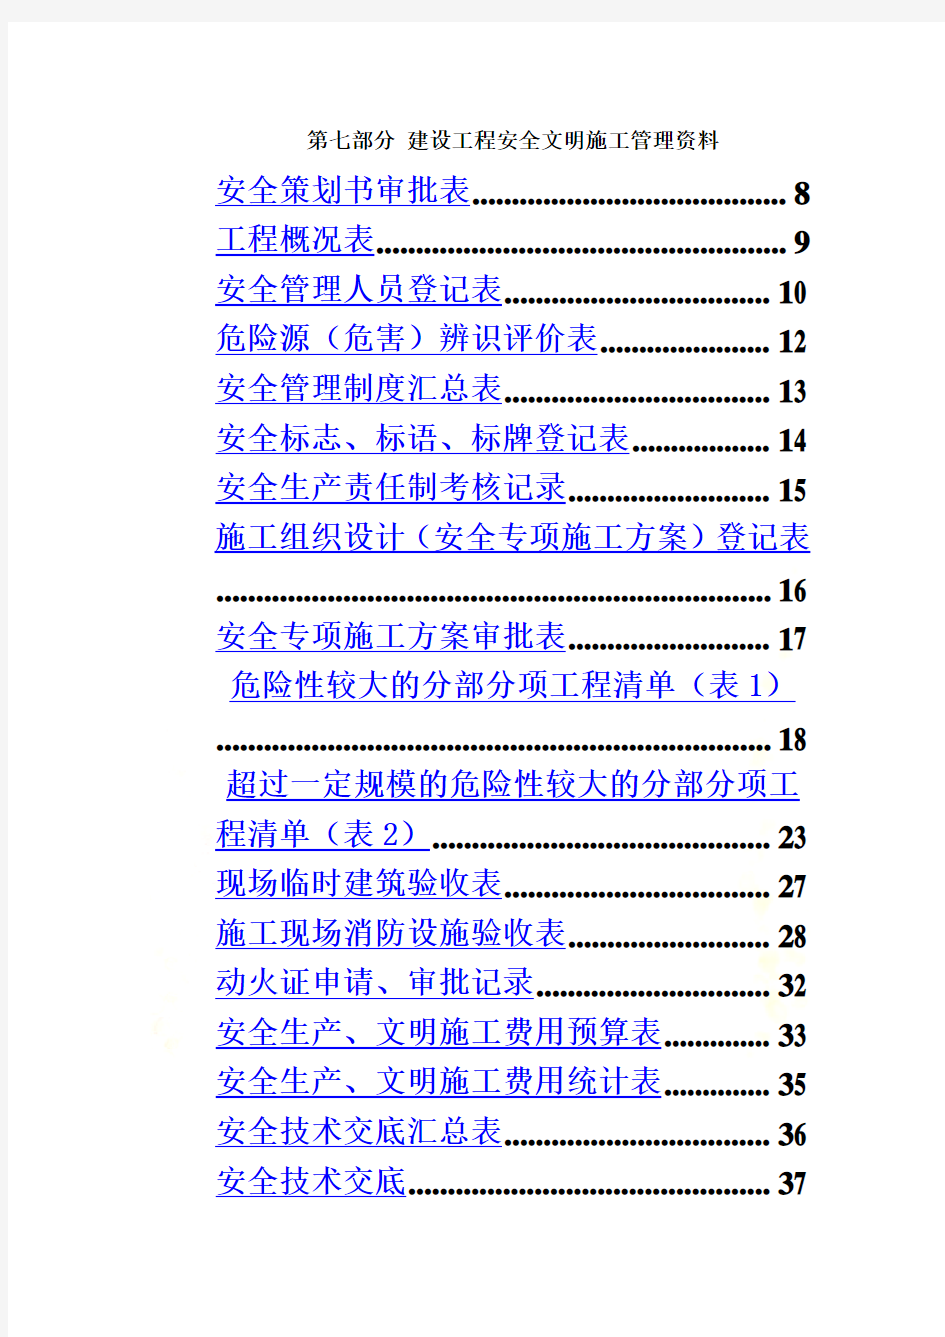 武汉市建设工程安全文明施工标准化指导手册(2014版)第七部分